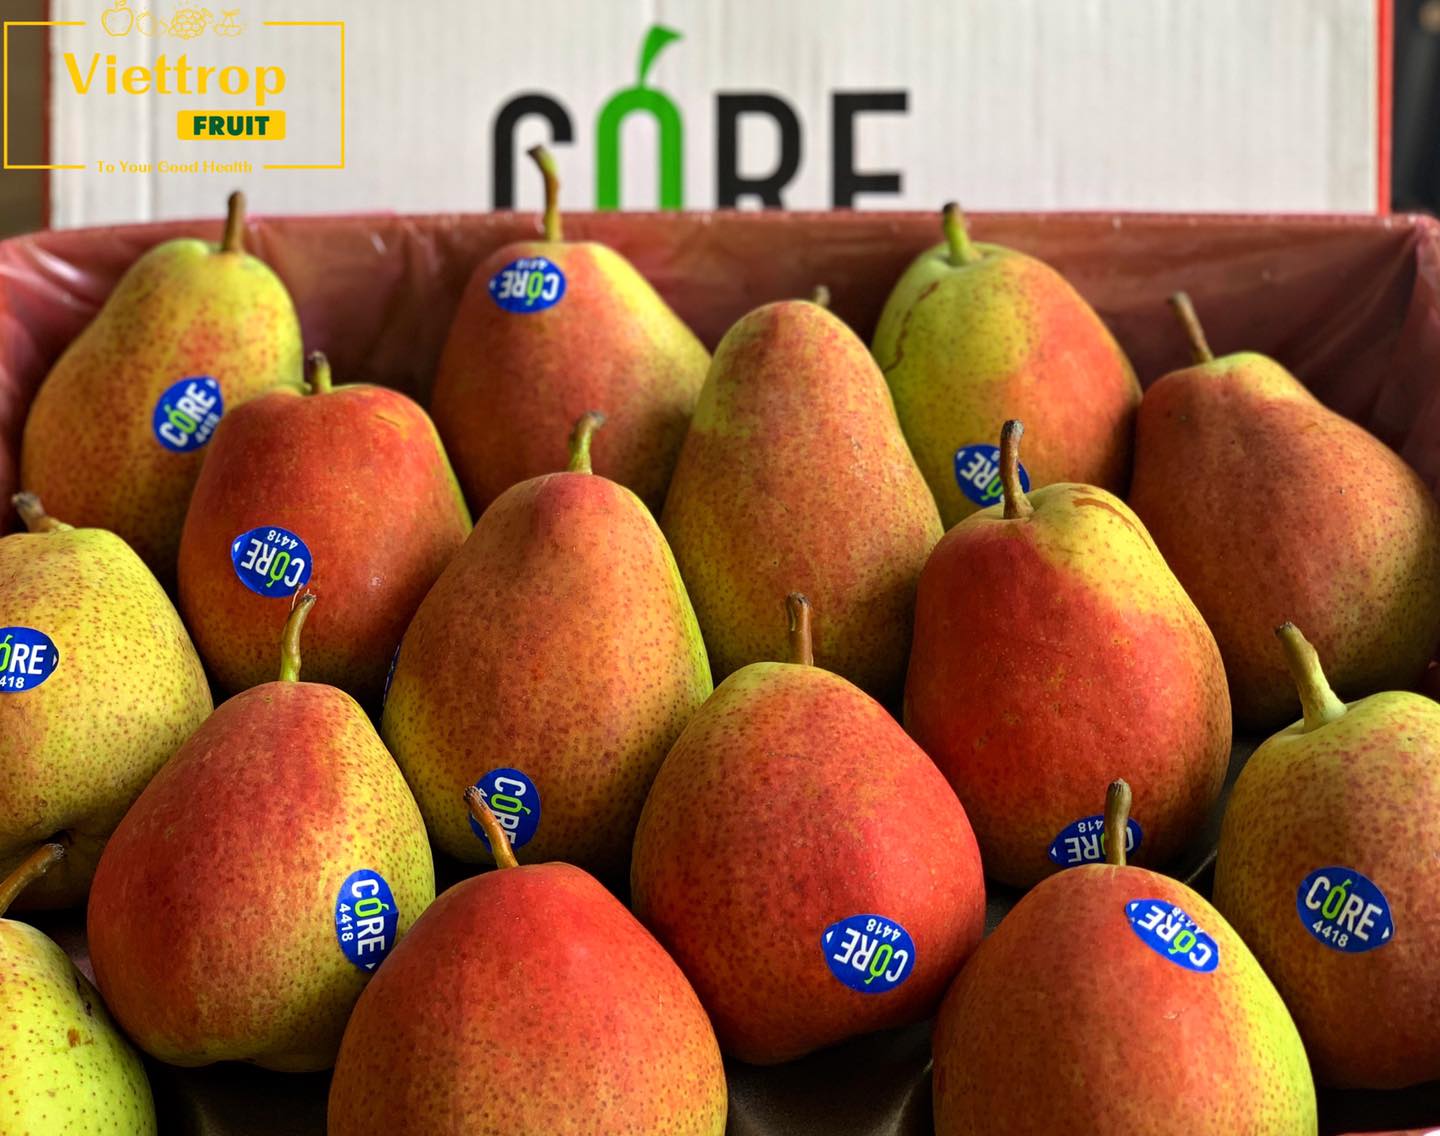 Viettropfruit Trái cây sạch tiêu chuẩn GlobalG.A.P ảnh 1